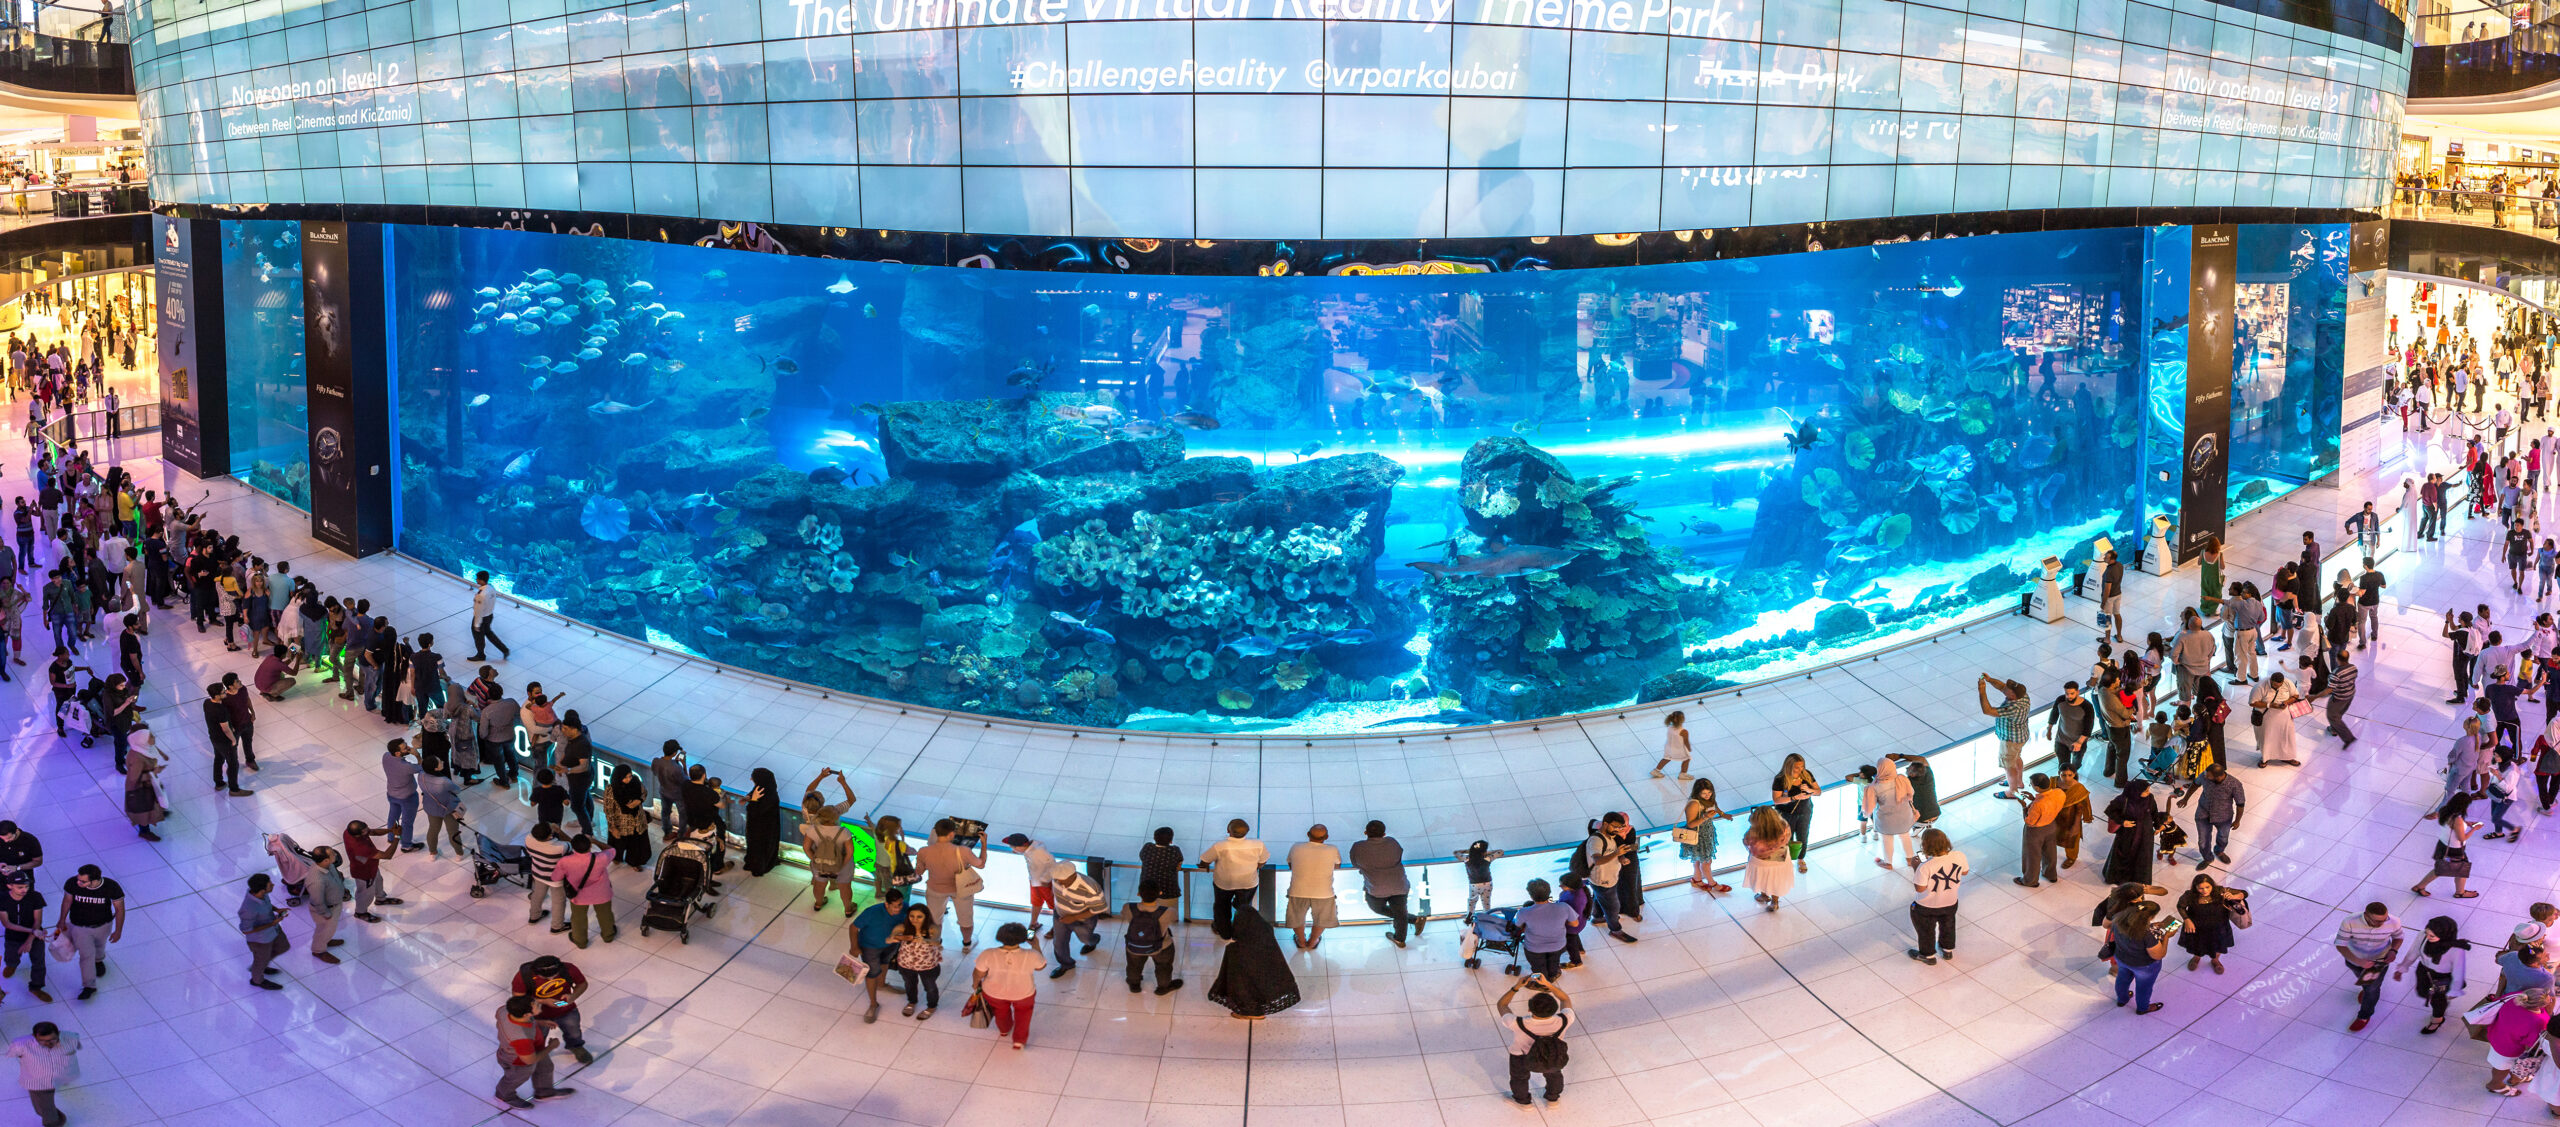 Dubai Aquarium and Underwater Zoo - Fish tank panel